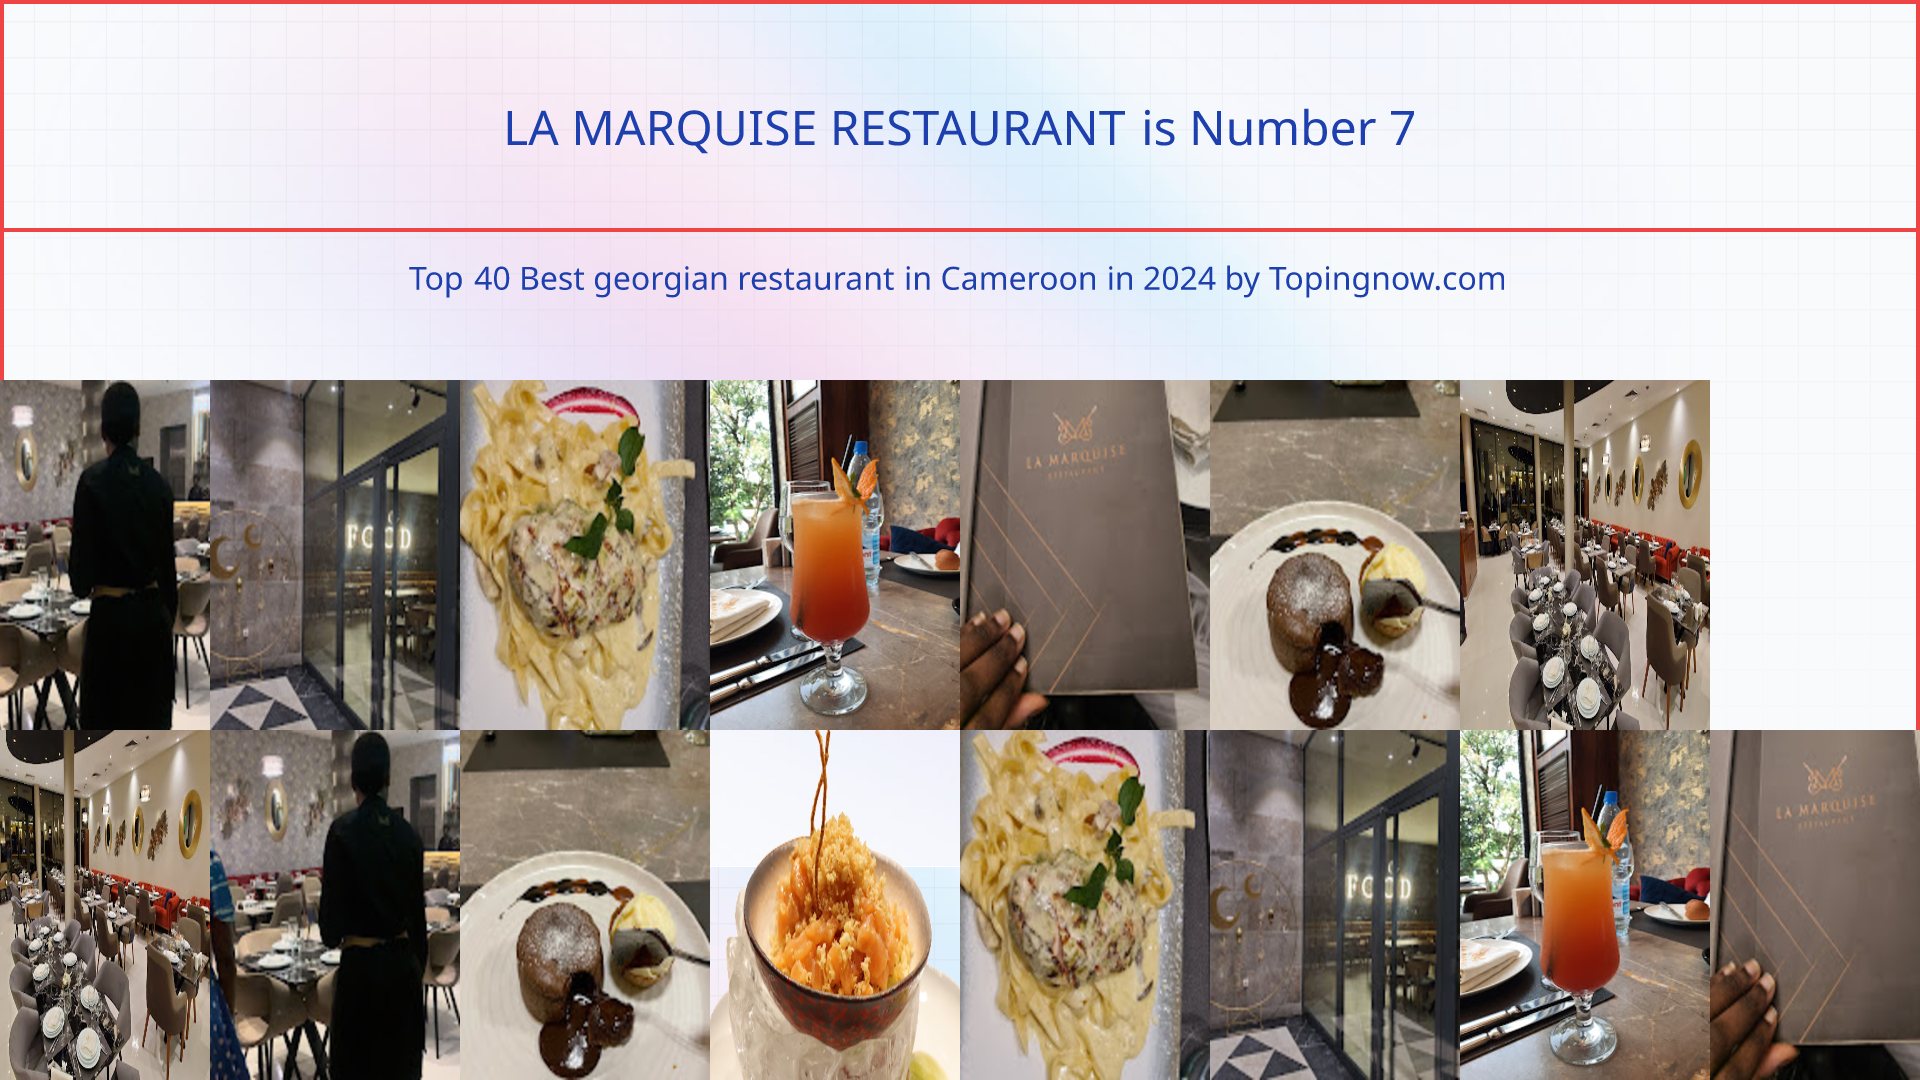 LA MARQUISE RESTAURANT: Top 40 Best georgian restaurant in Cameroon in 2024